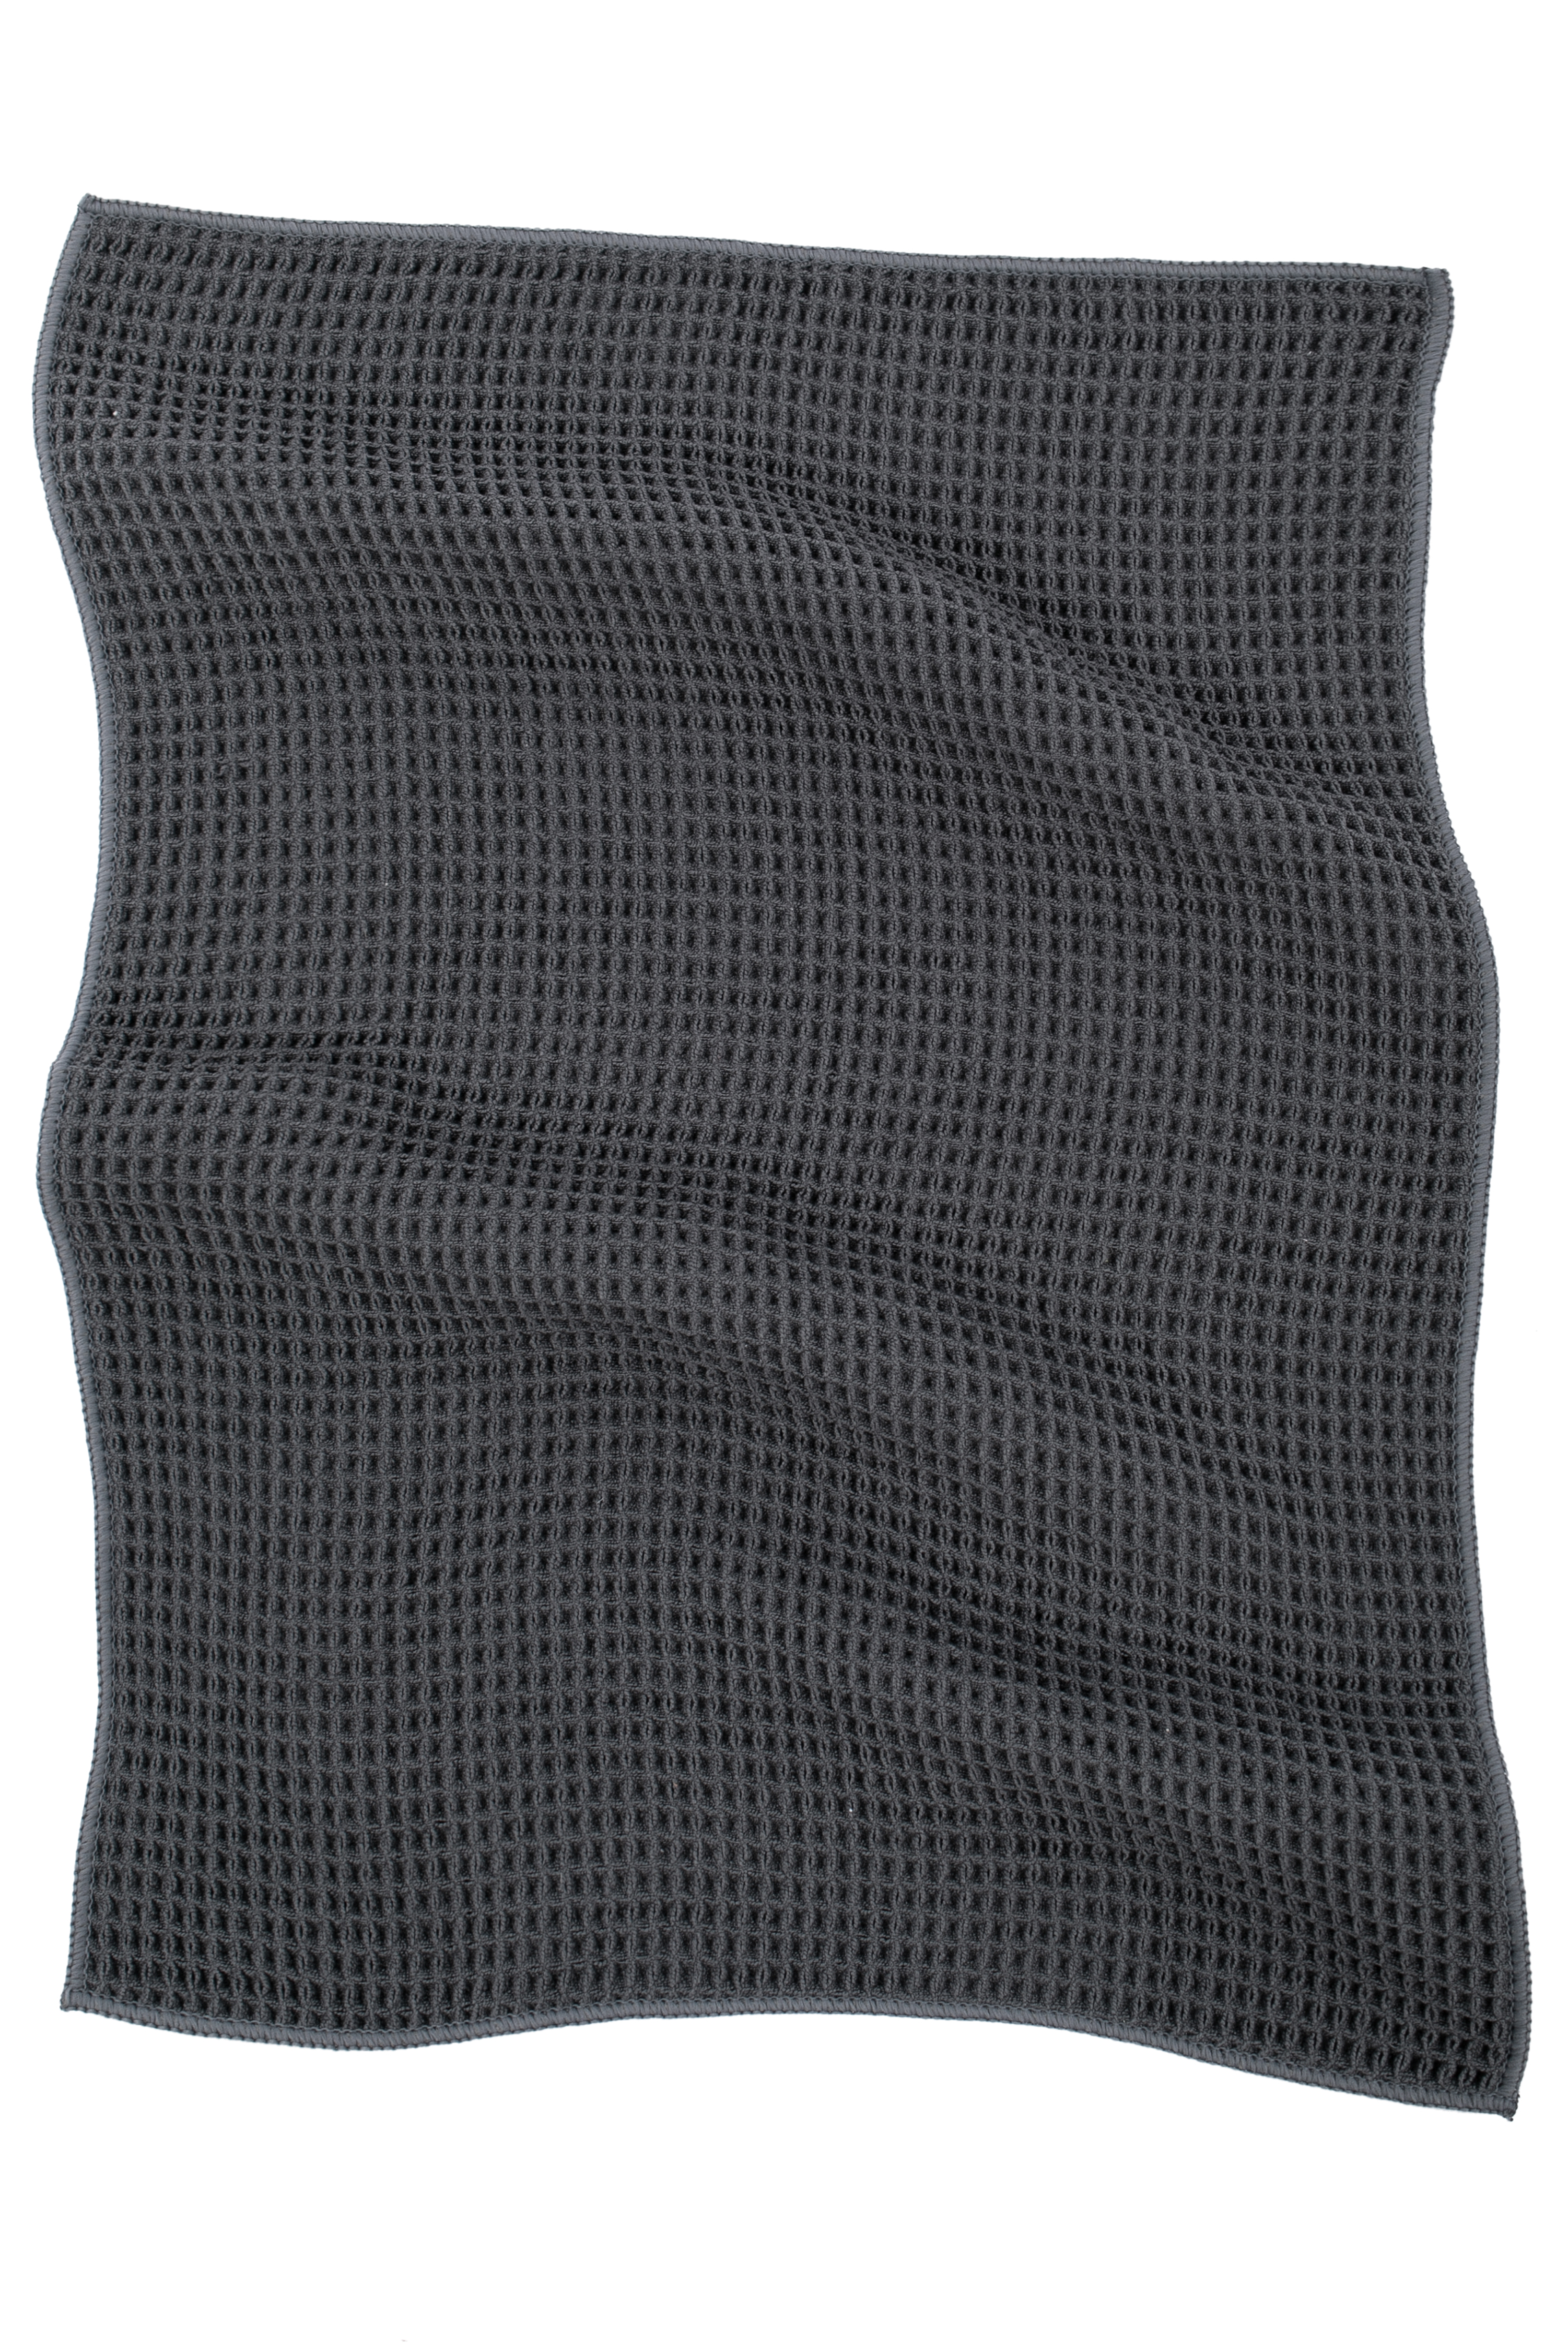 Kitchen towel ESSENTIAL, microfiber 40x60cm, set/2, dark grey